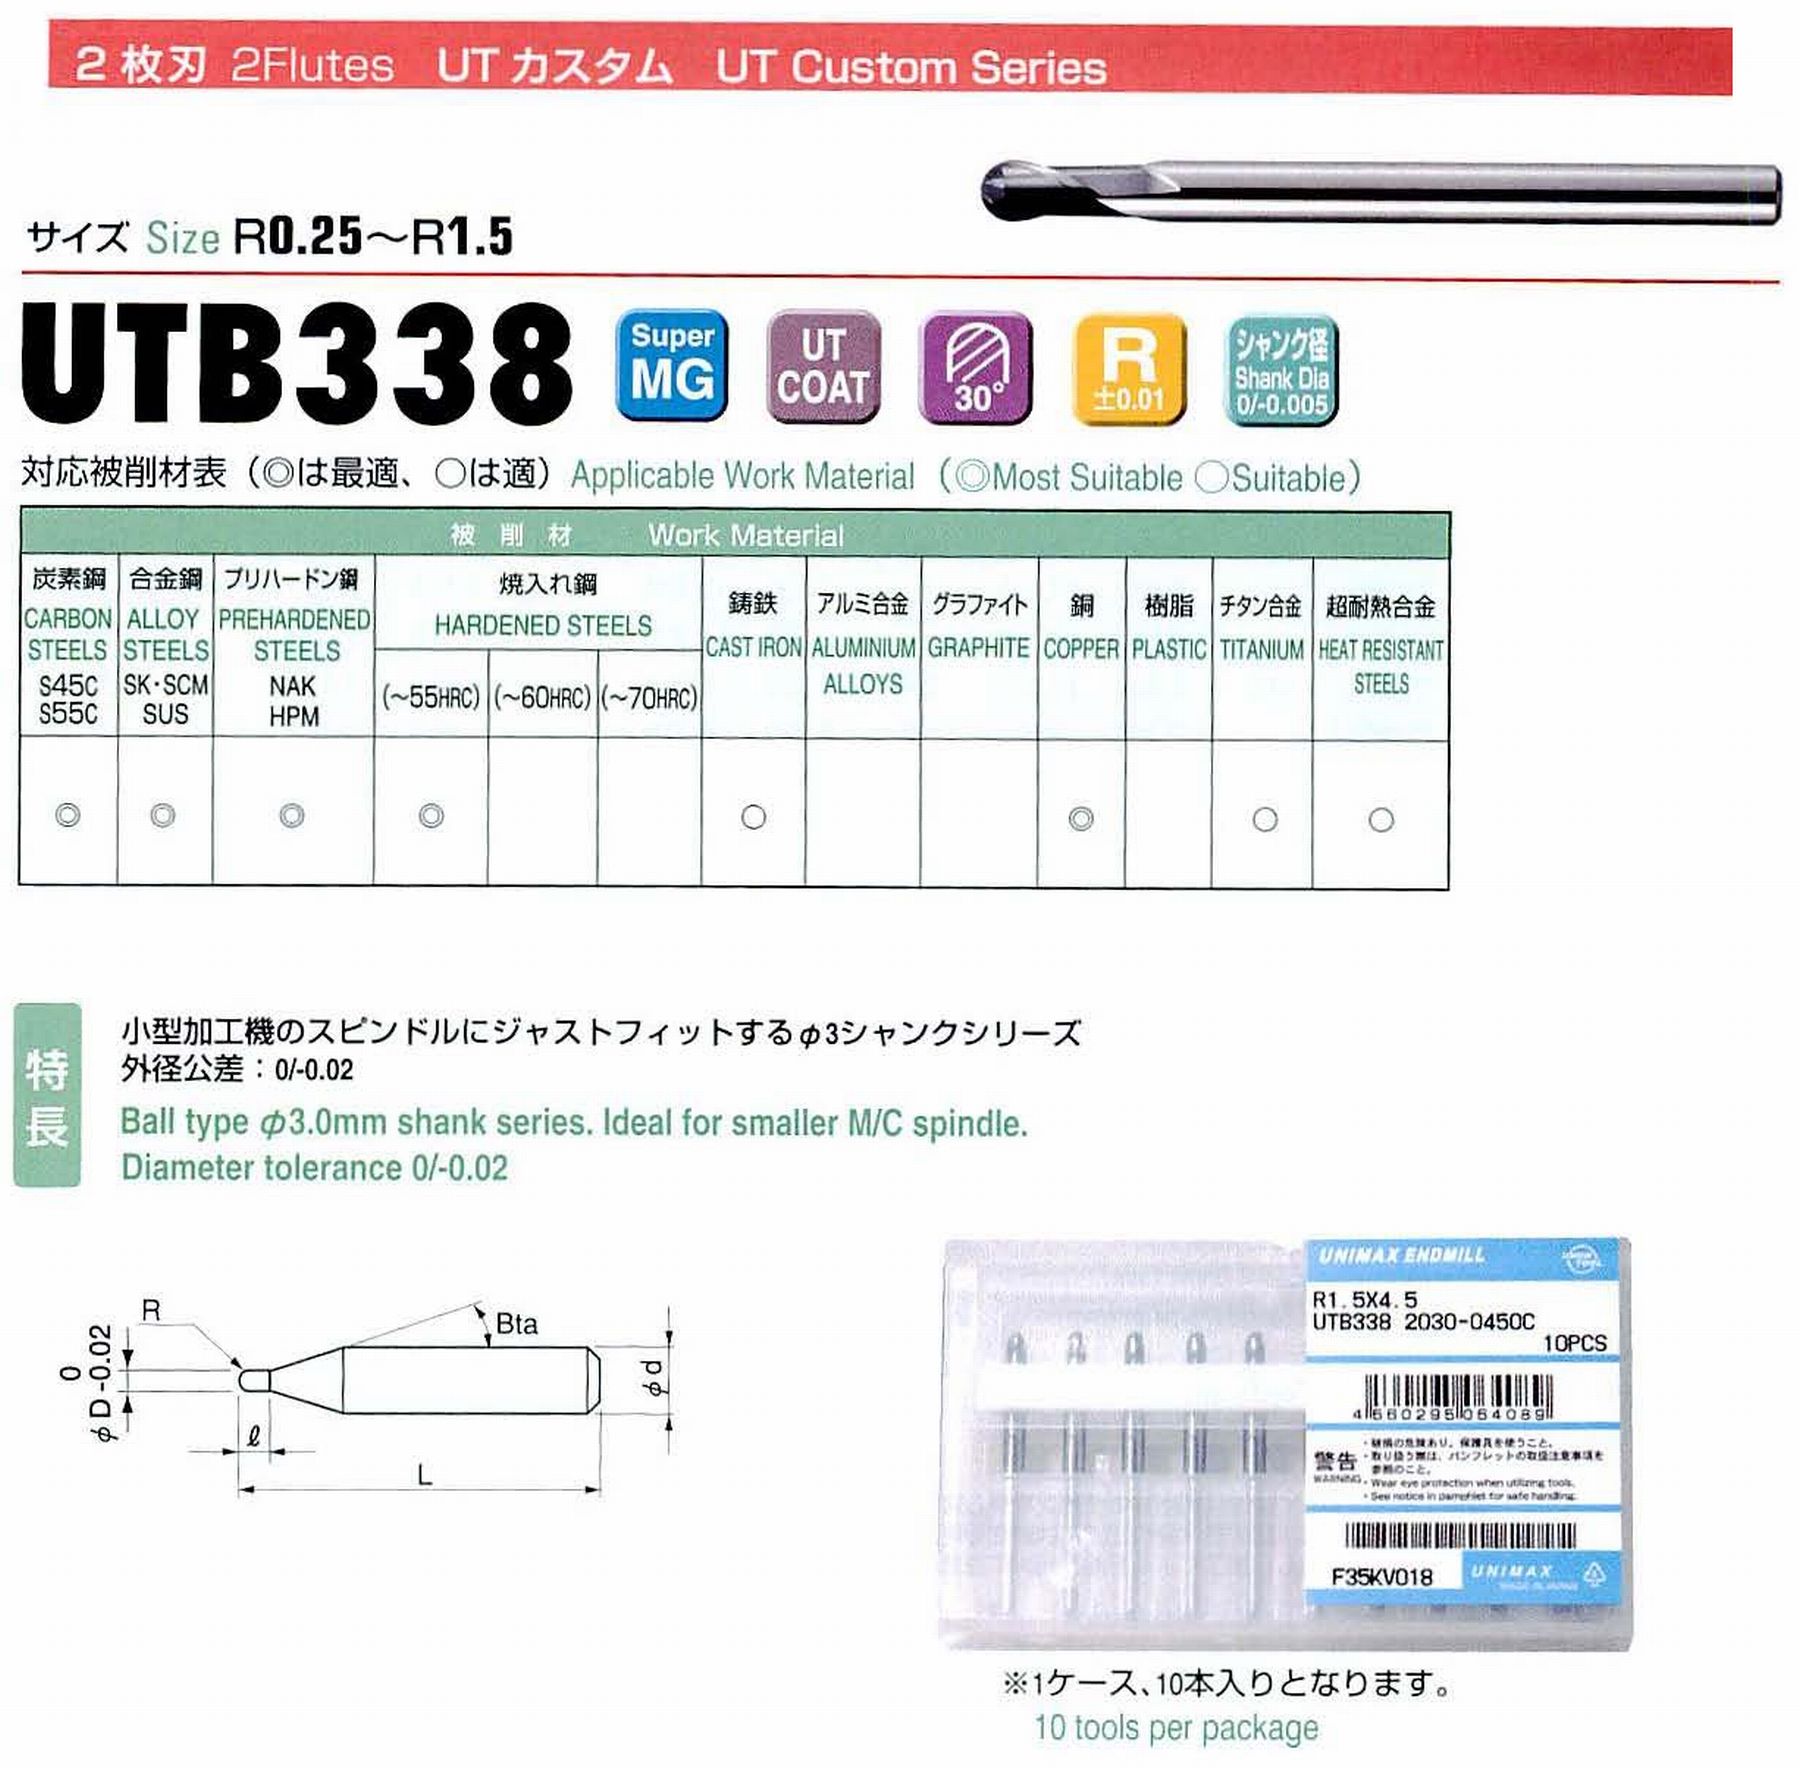 ユニオンツール 2枚刃 UTB338 2020-0300C ボール半径R1 刃長3 シャンクテーパ角16° 全長38 シャンク径3